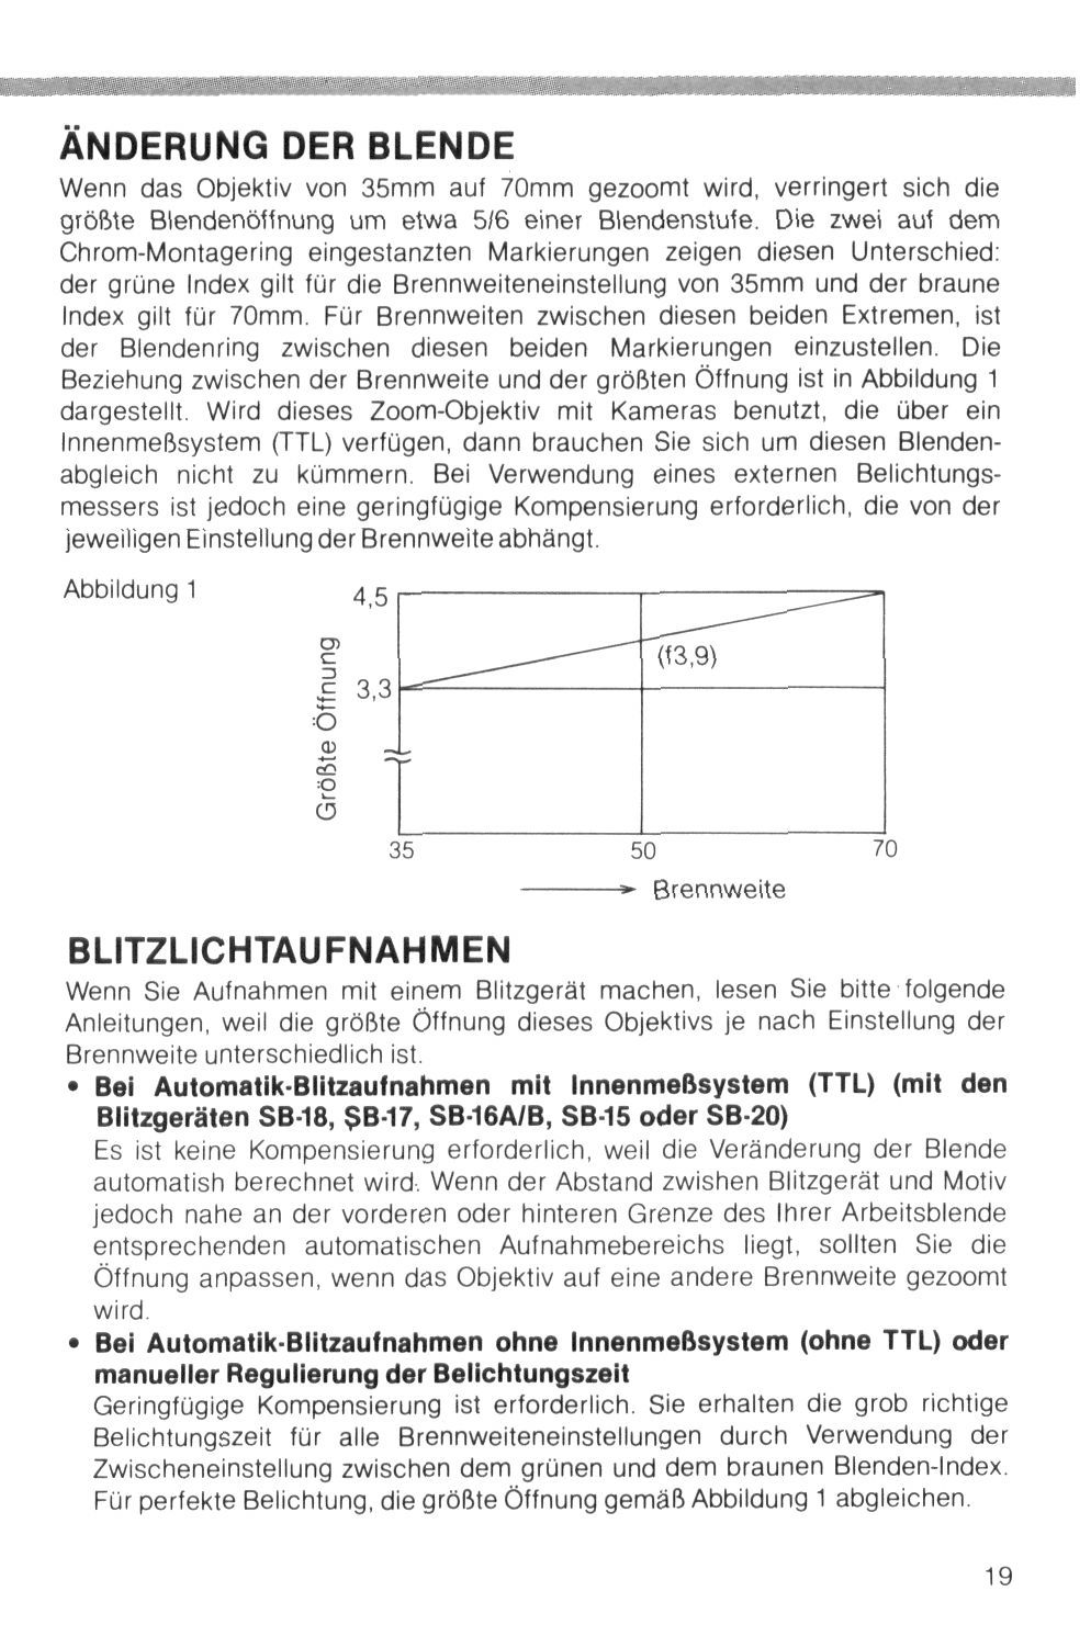 Nikon instruction manual Anderung Der Blende, Blitzlichtaufnahmen, 355070 